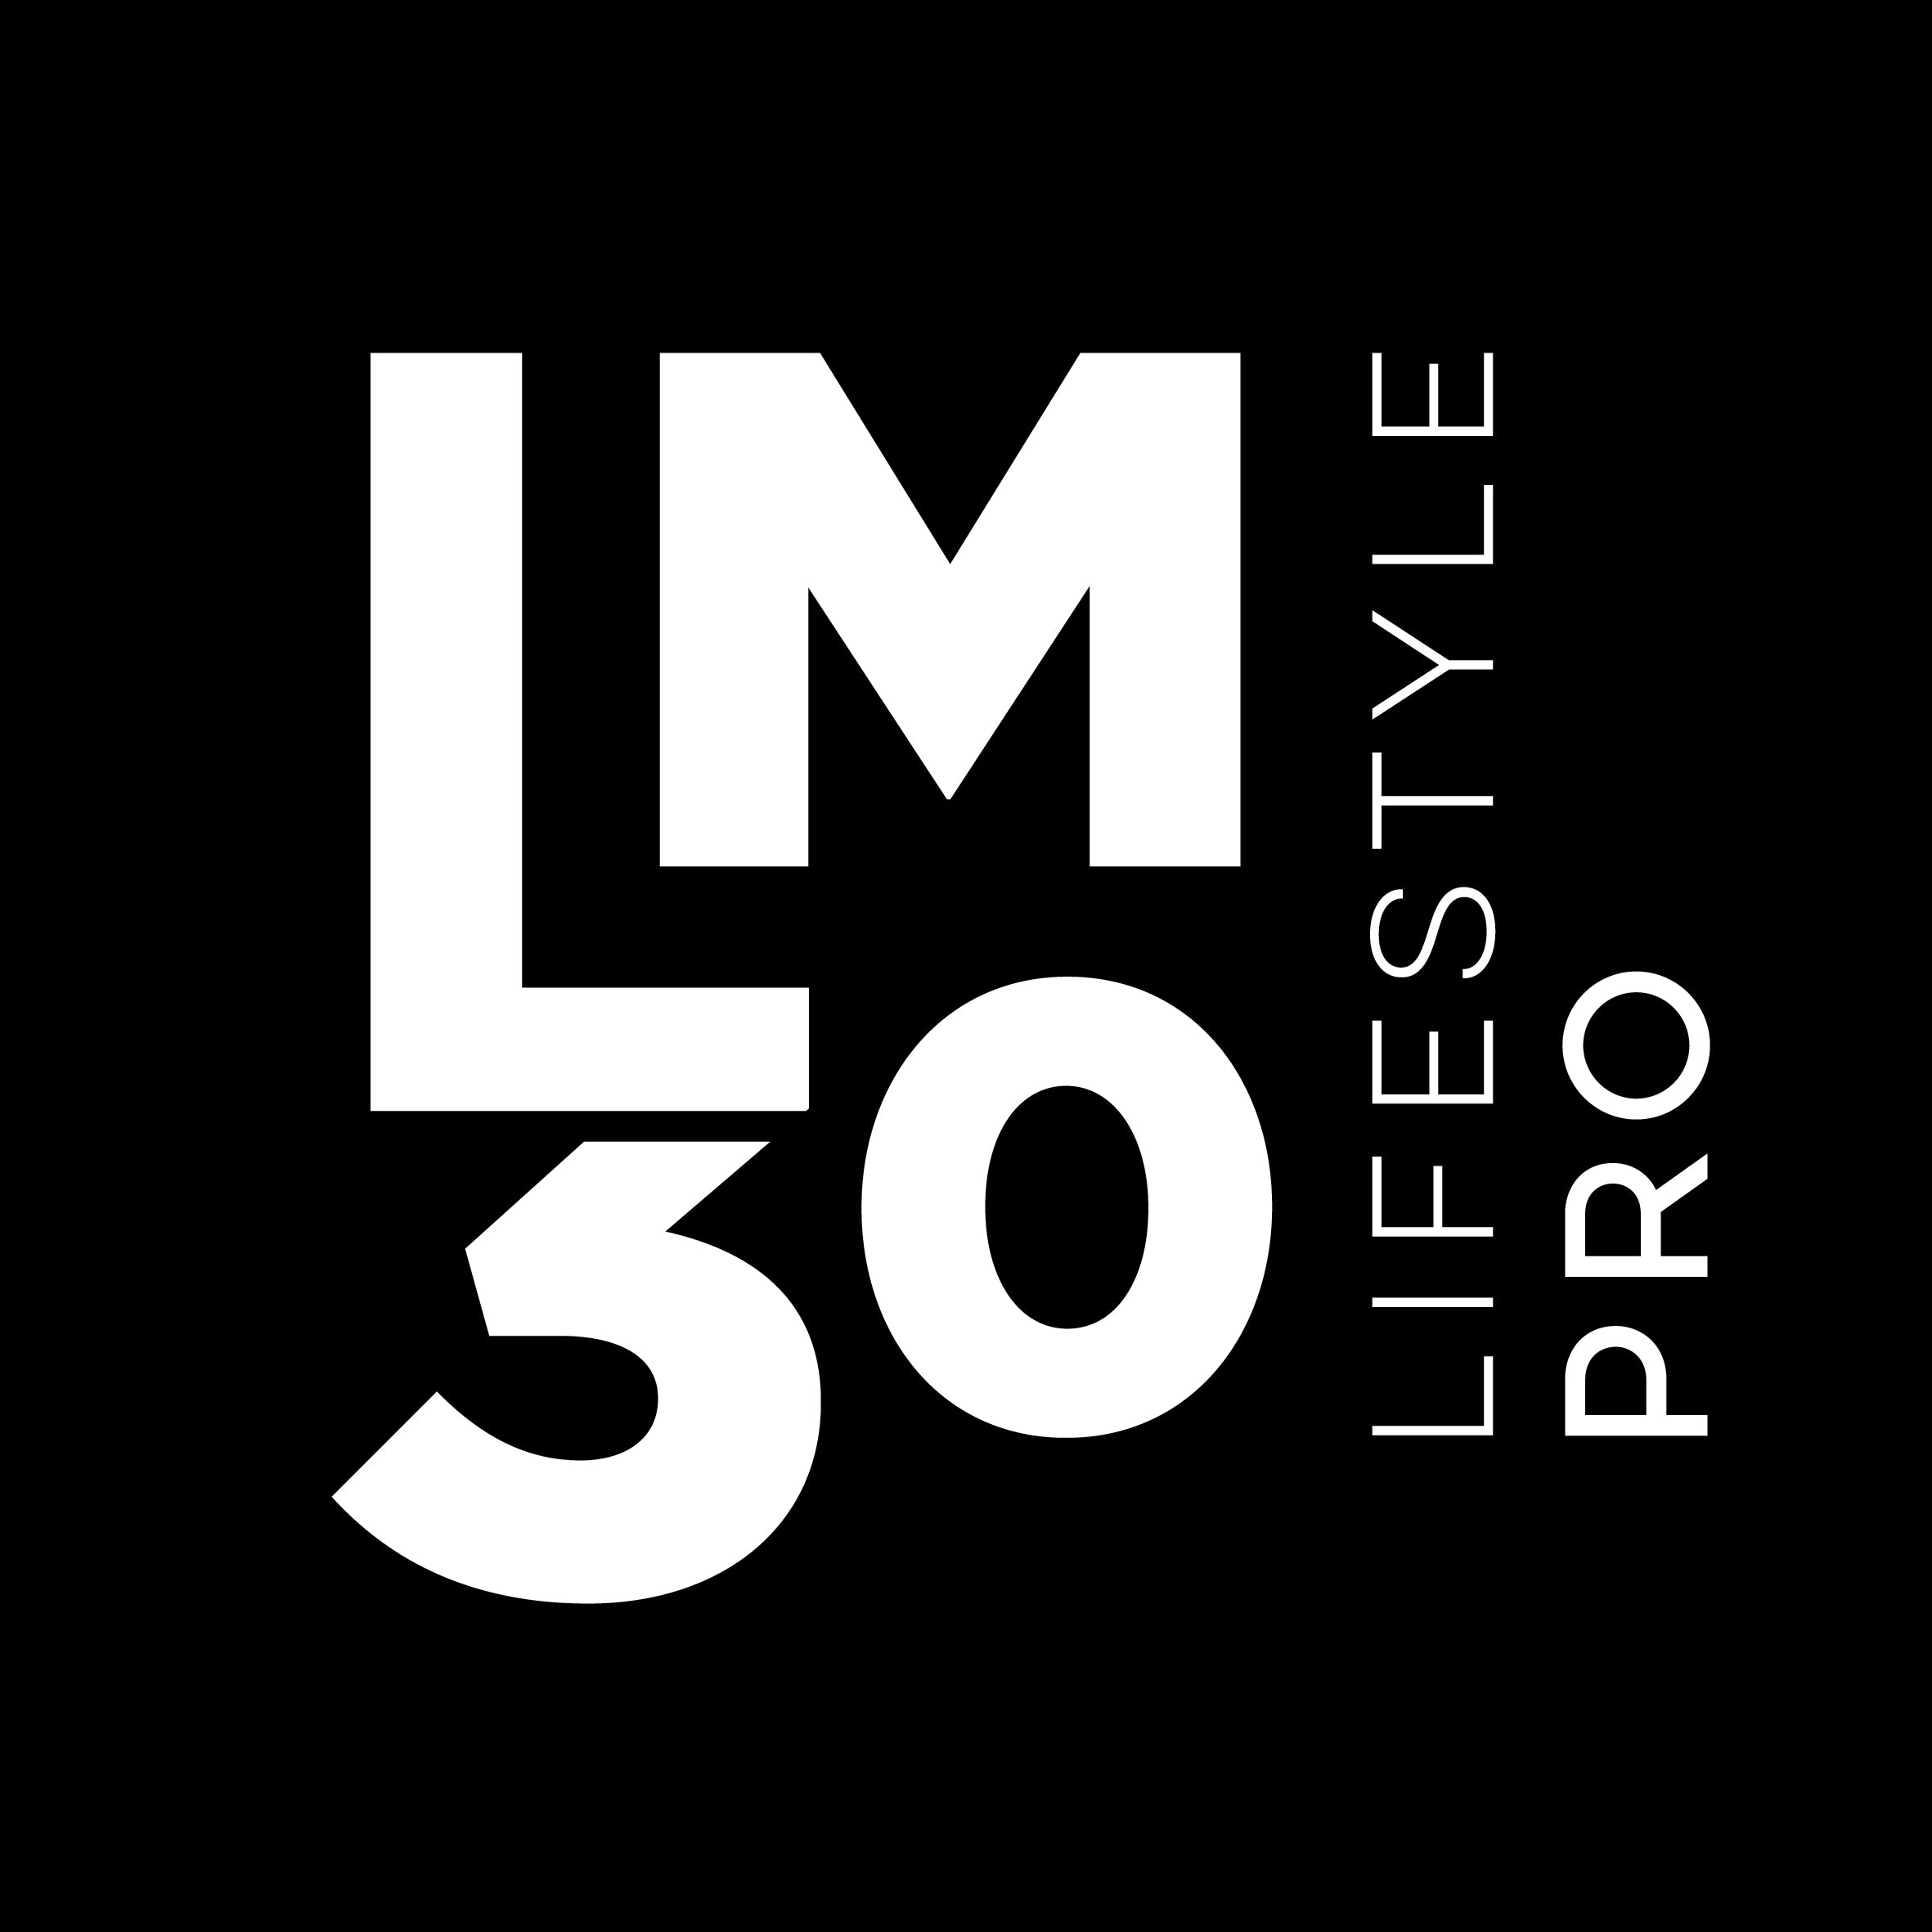 LM30 Pro est synonyme pour des projets sur mesure